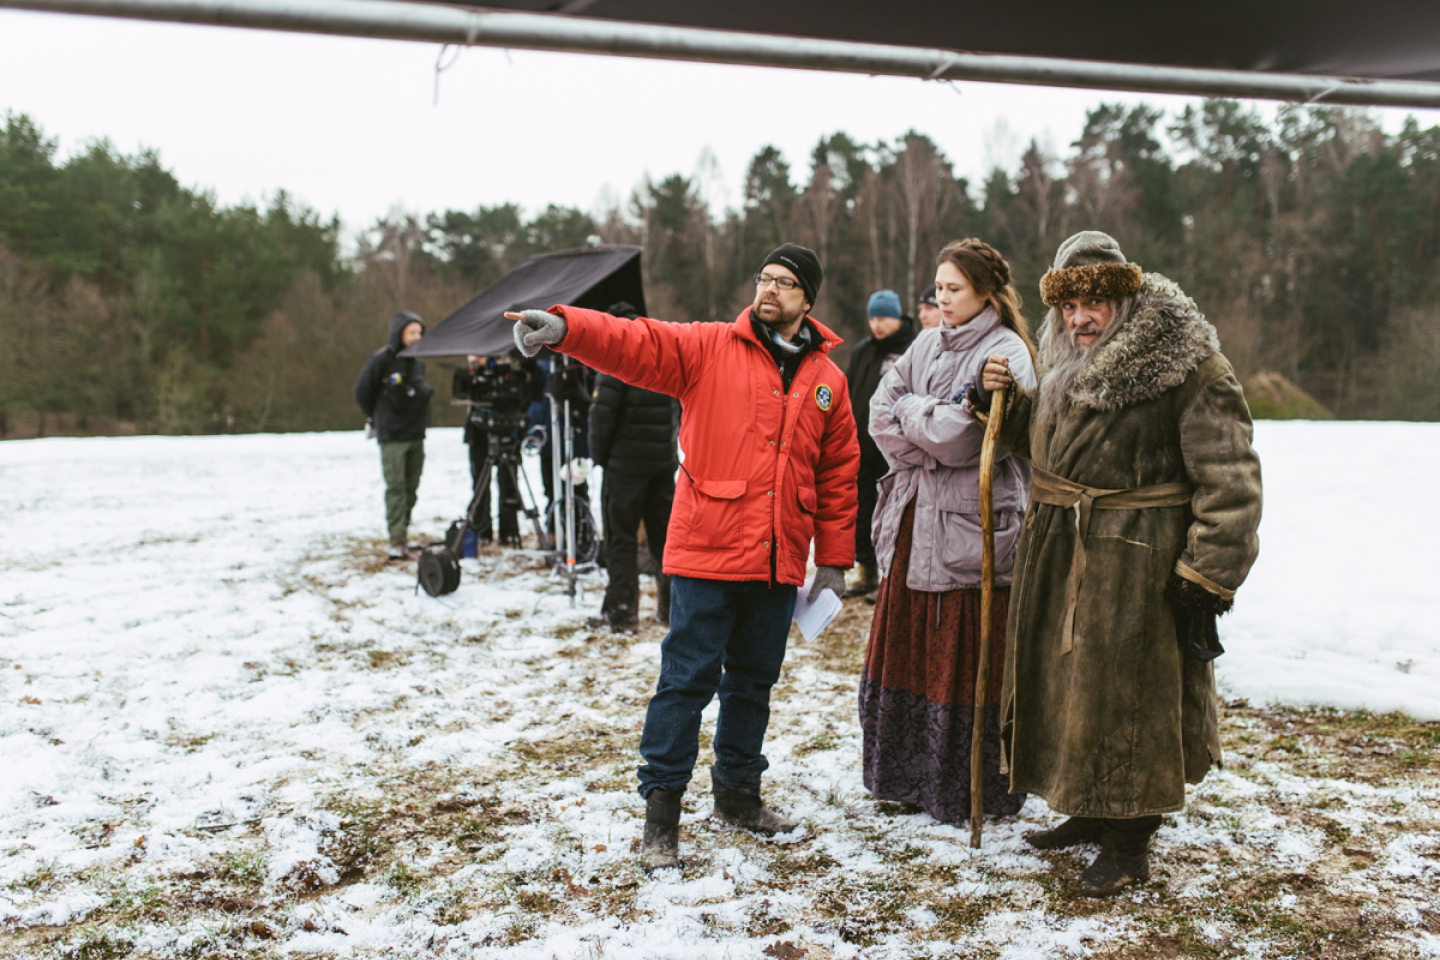 Rodaje de invierno al aire libre con equipo de cámara, en primer plano un miembro del equipo señala junto a dos actores con grandes abrigos 